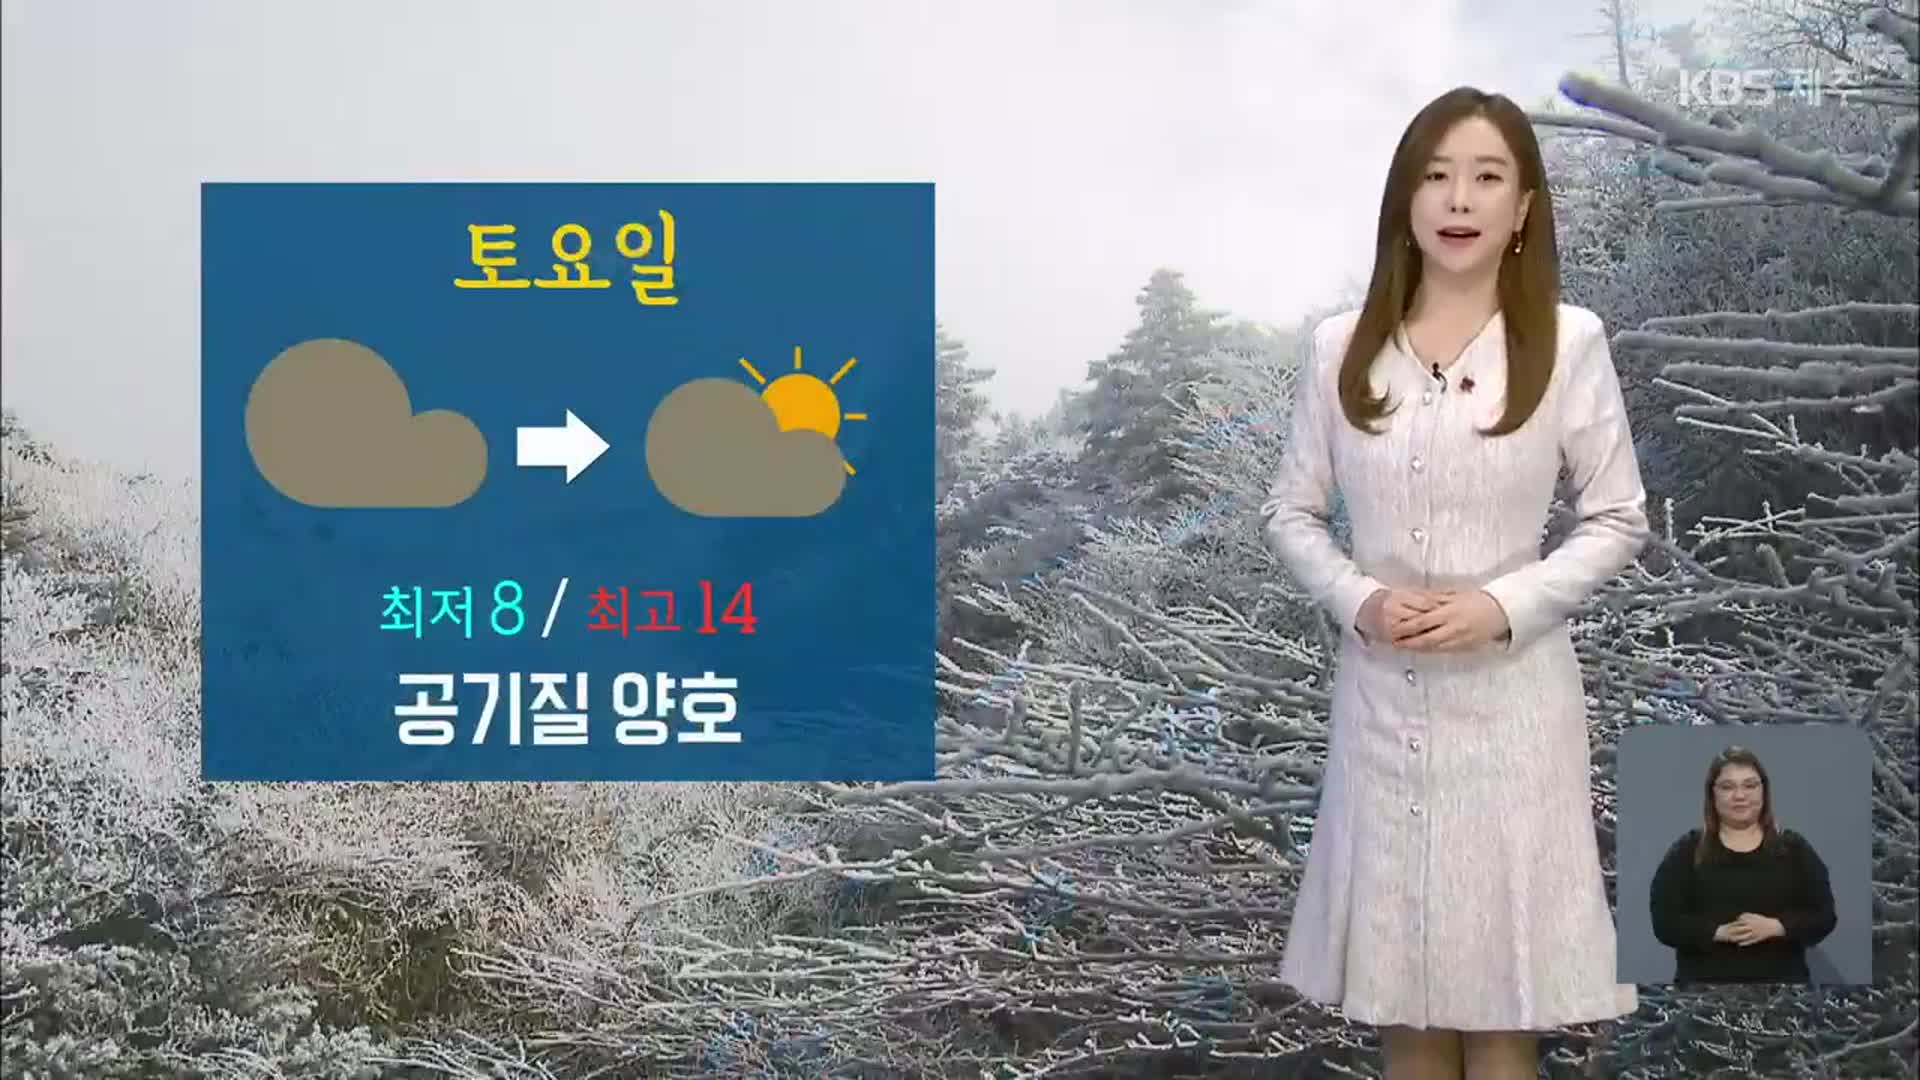 [날씨] 제주 내일 구름 많아…일요일부터 급격히 추워져